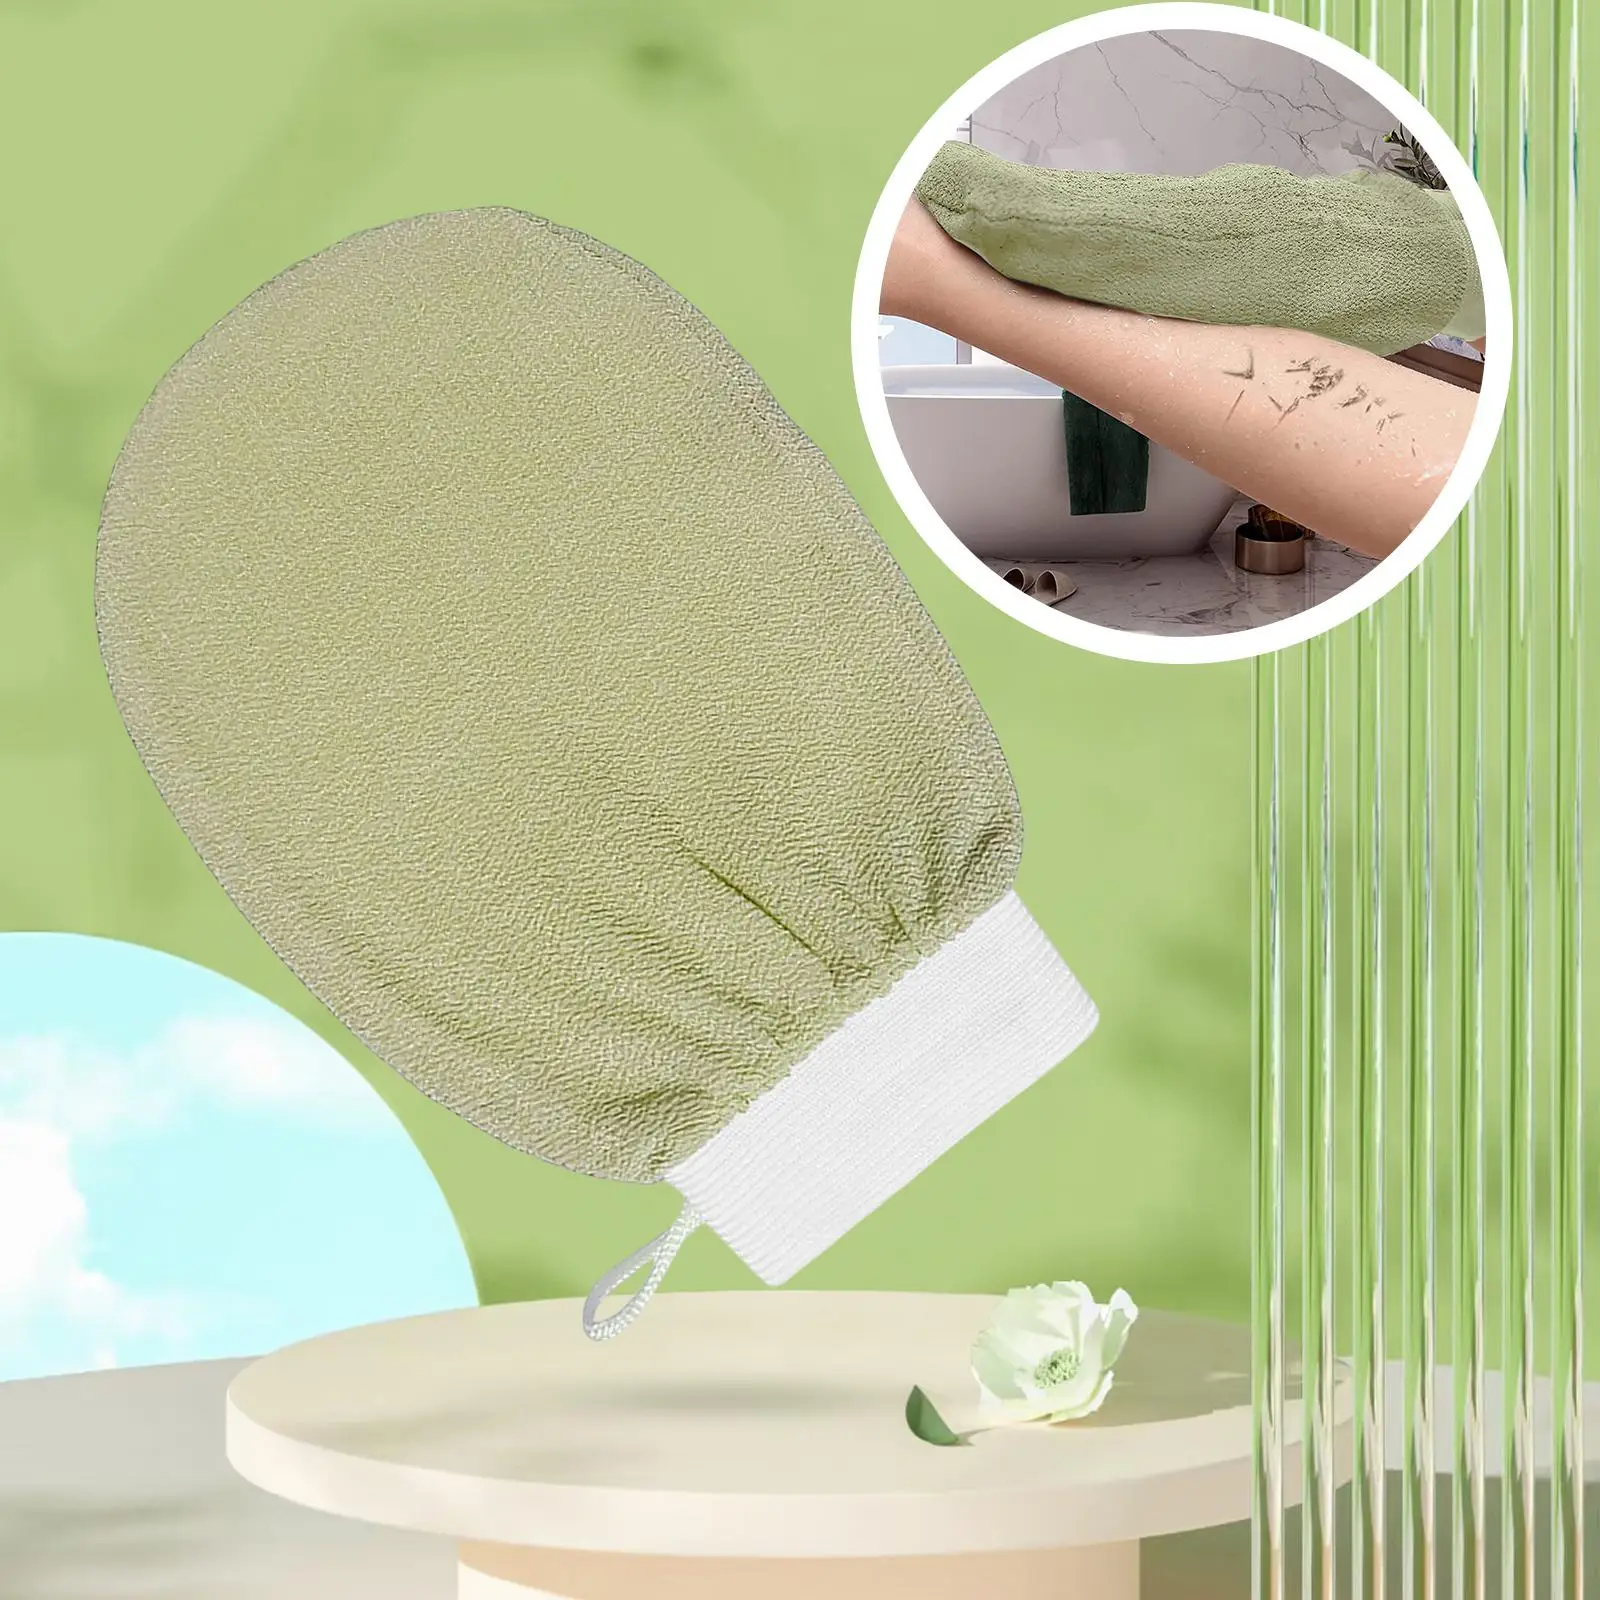 Bath Glove Gentle Body Scrub Scrubber Shower Gloves for Deep Cleansing Bath Shower Hand